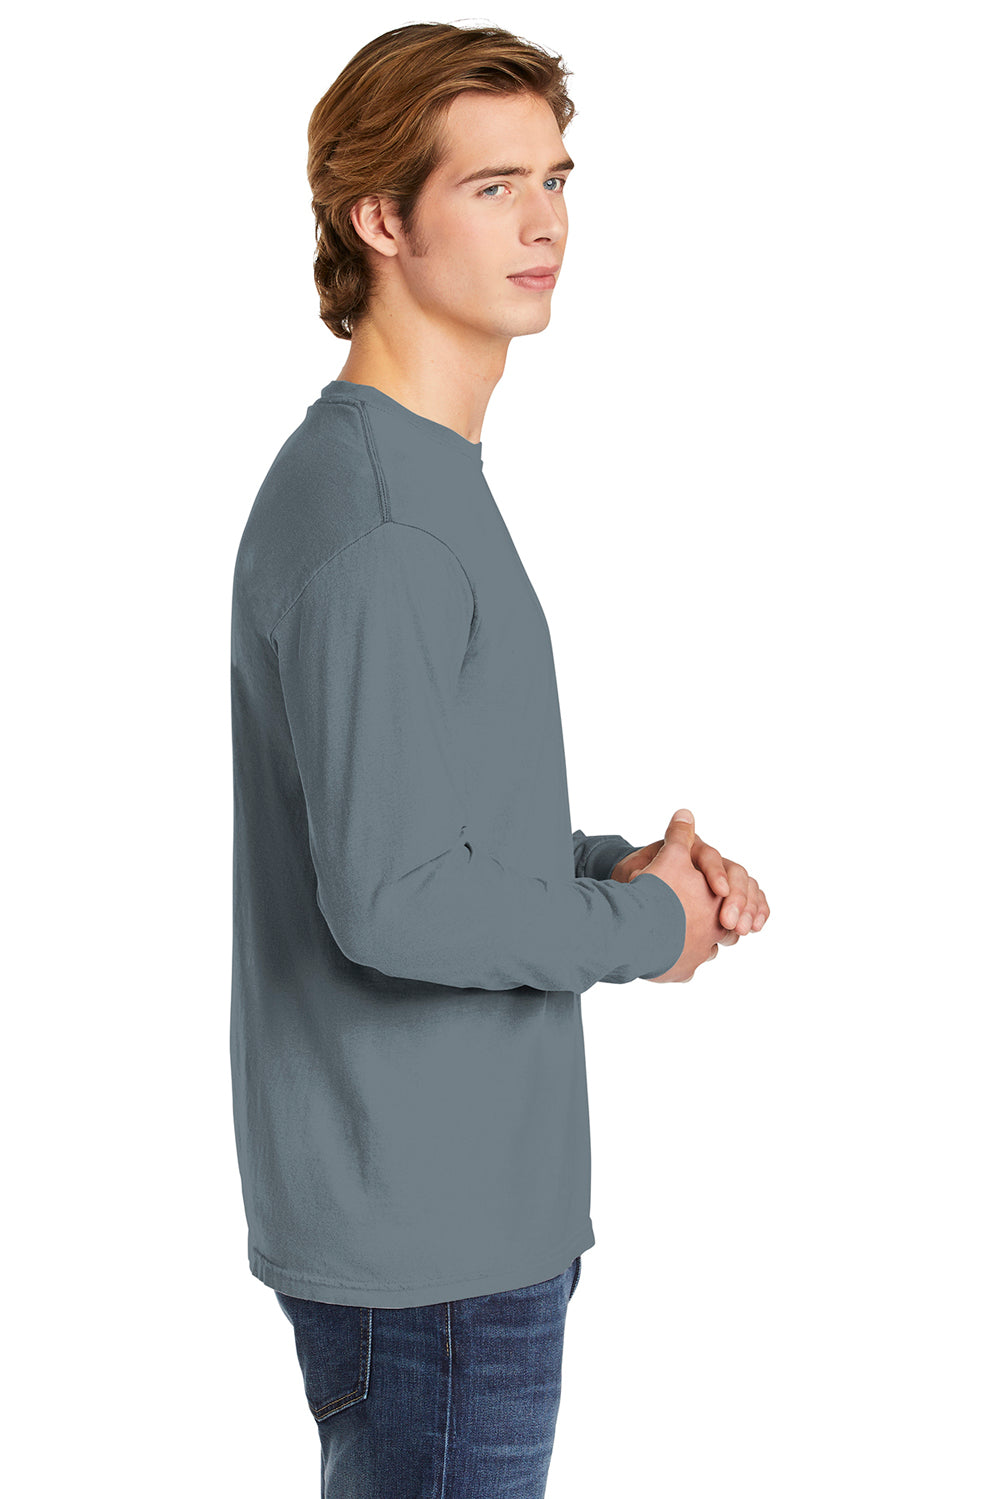 Comfort Colors 6014/C6014 Mens Long Sleeve Crewneck T-Shirt Granite Grey Side